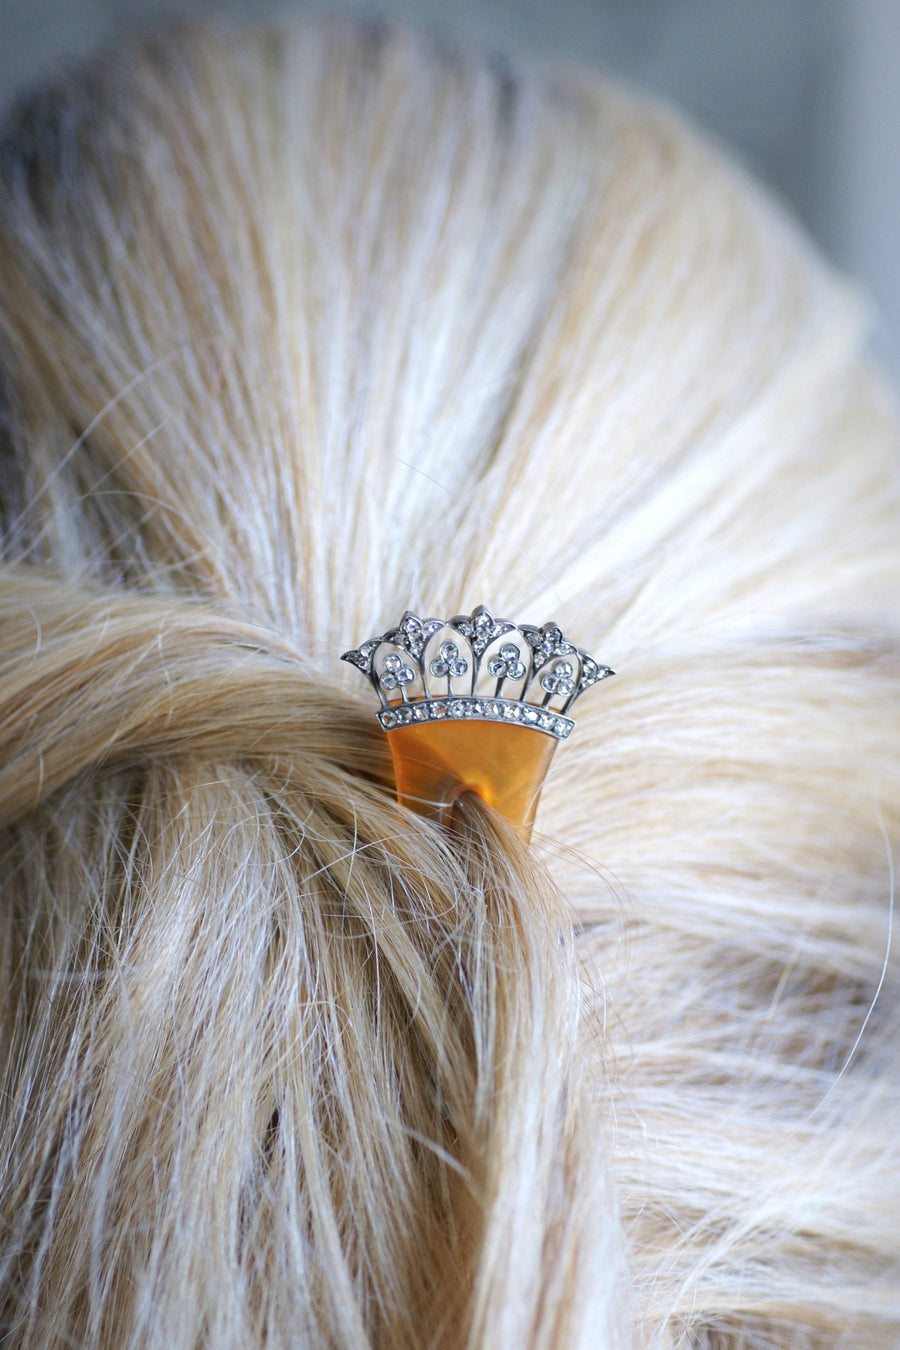 Peigne, épingle à cheveux de mariage, en diamants, or et argent sur corne - Galerie Pénélope